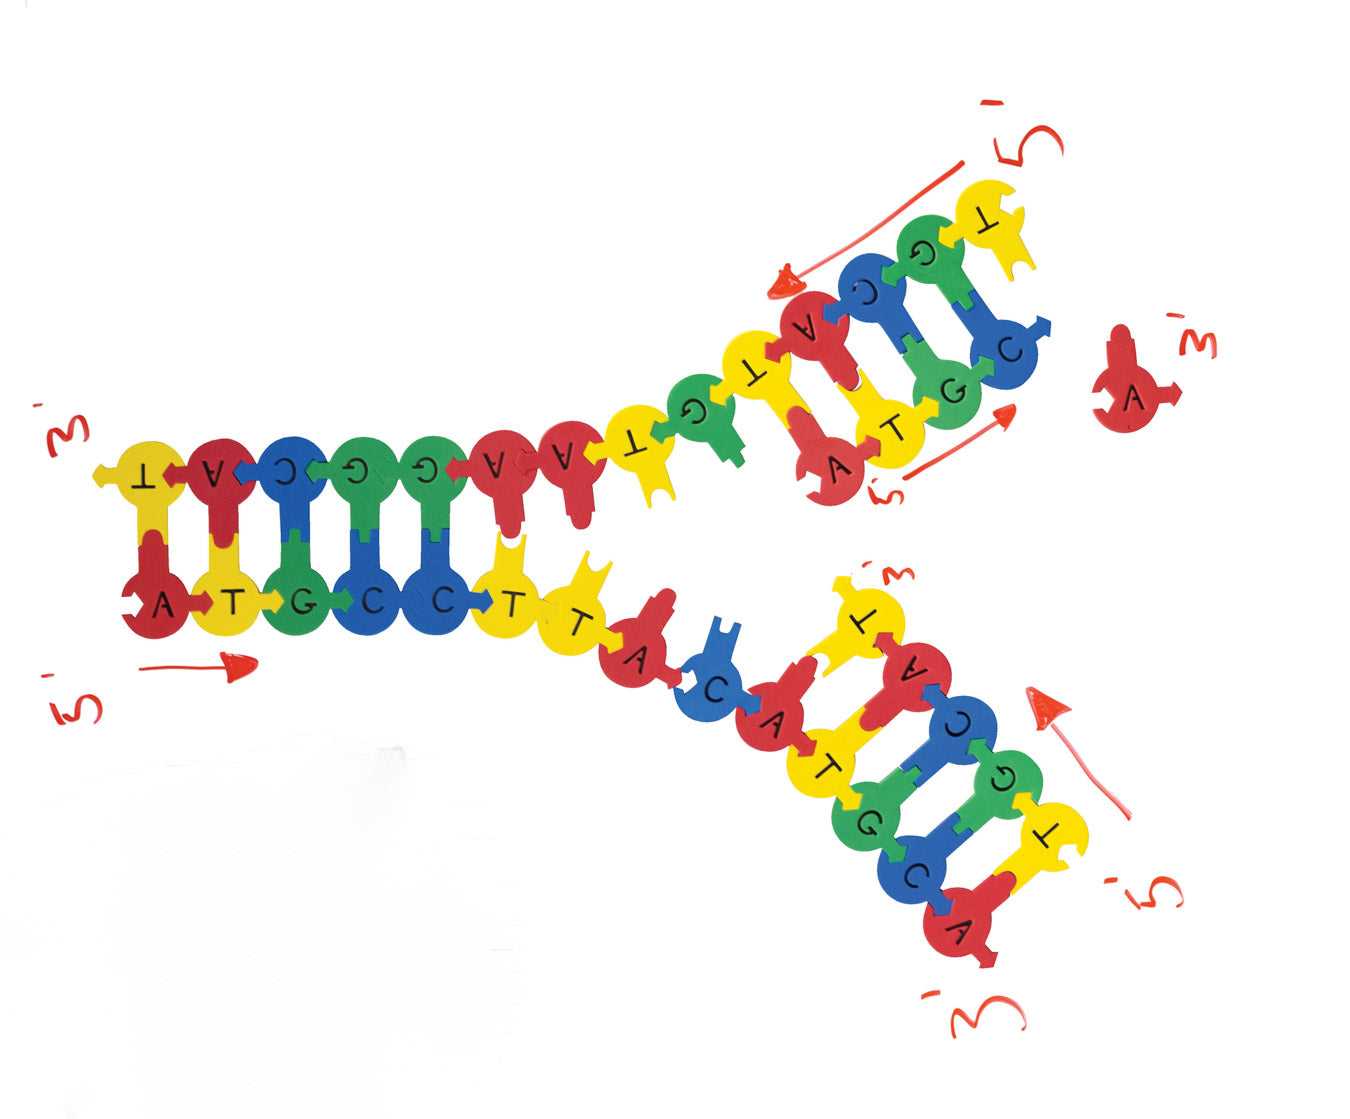 Demo DNA Nucleotides©